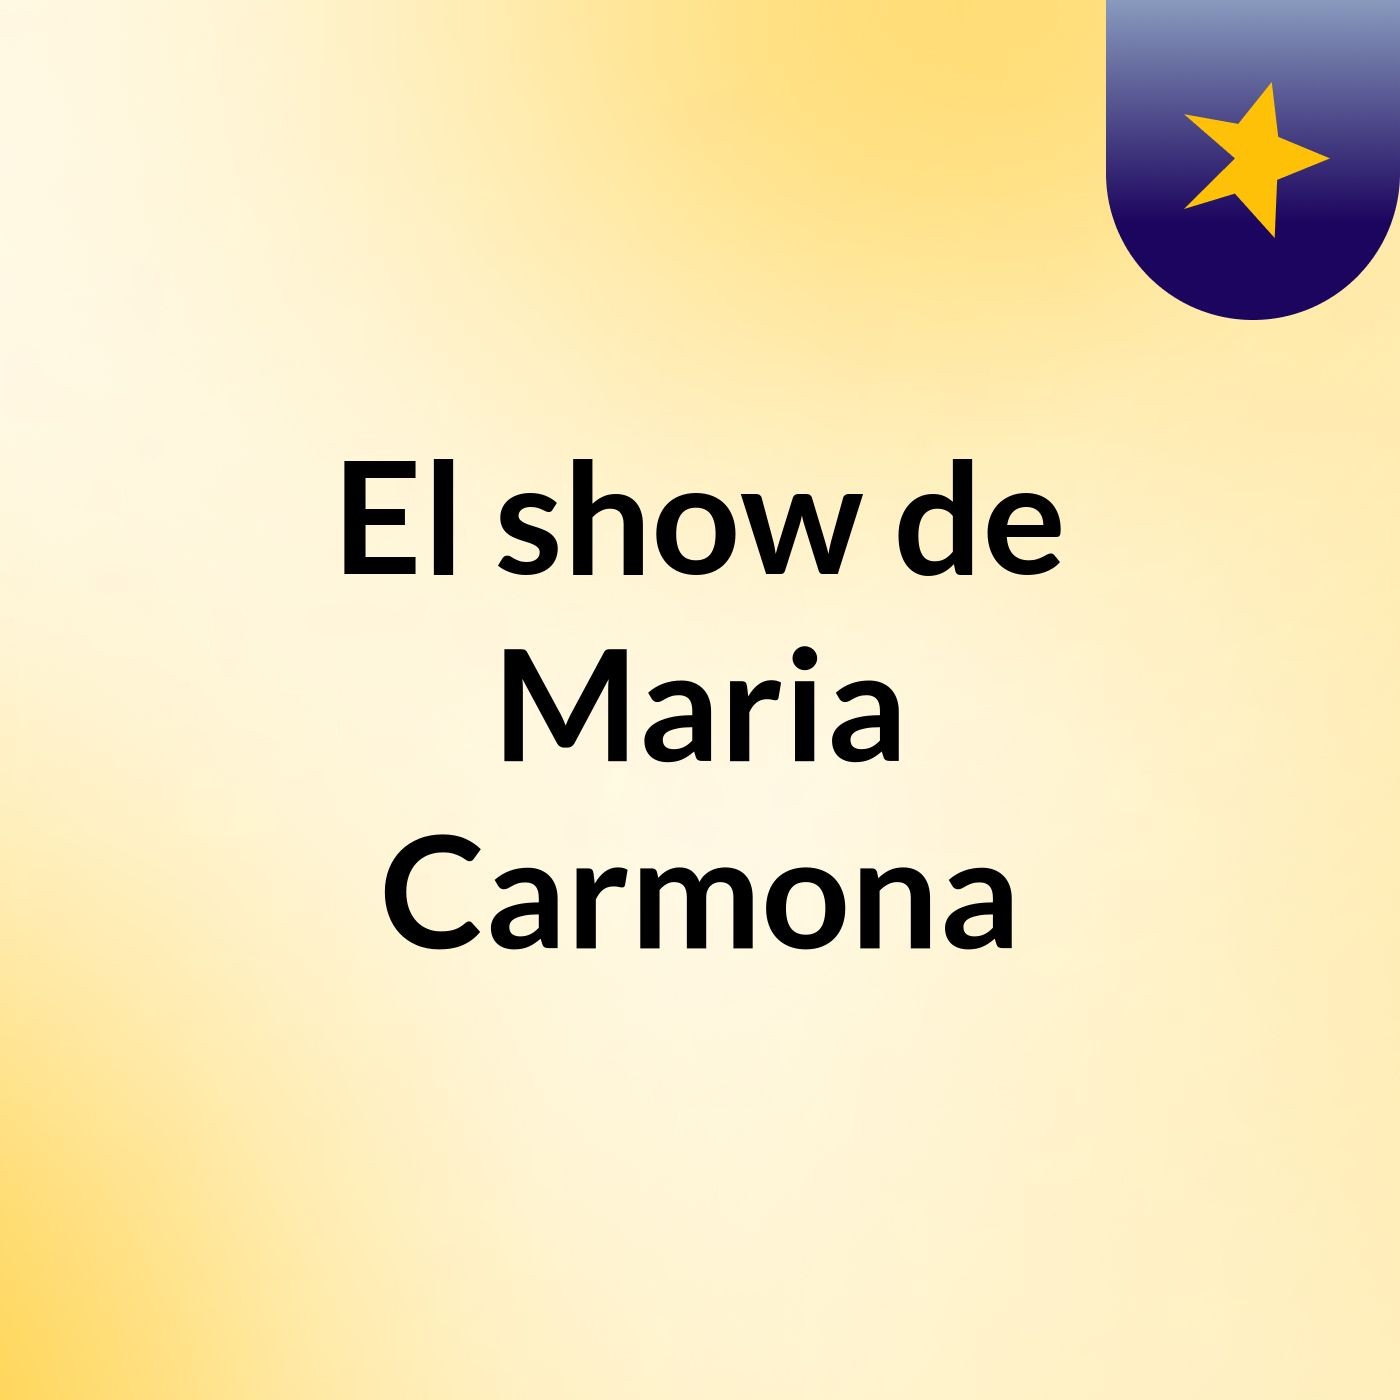 El show de Maria Carmona